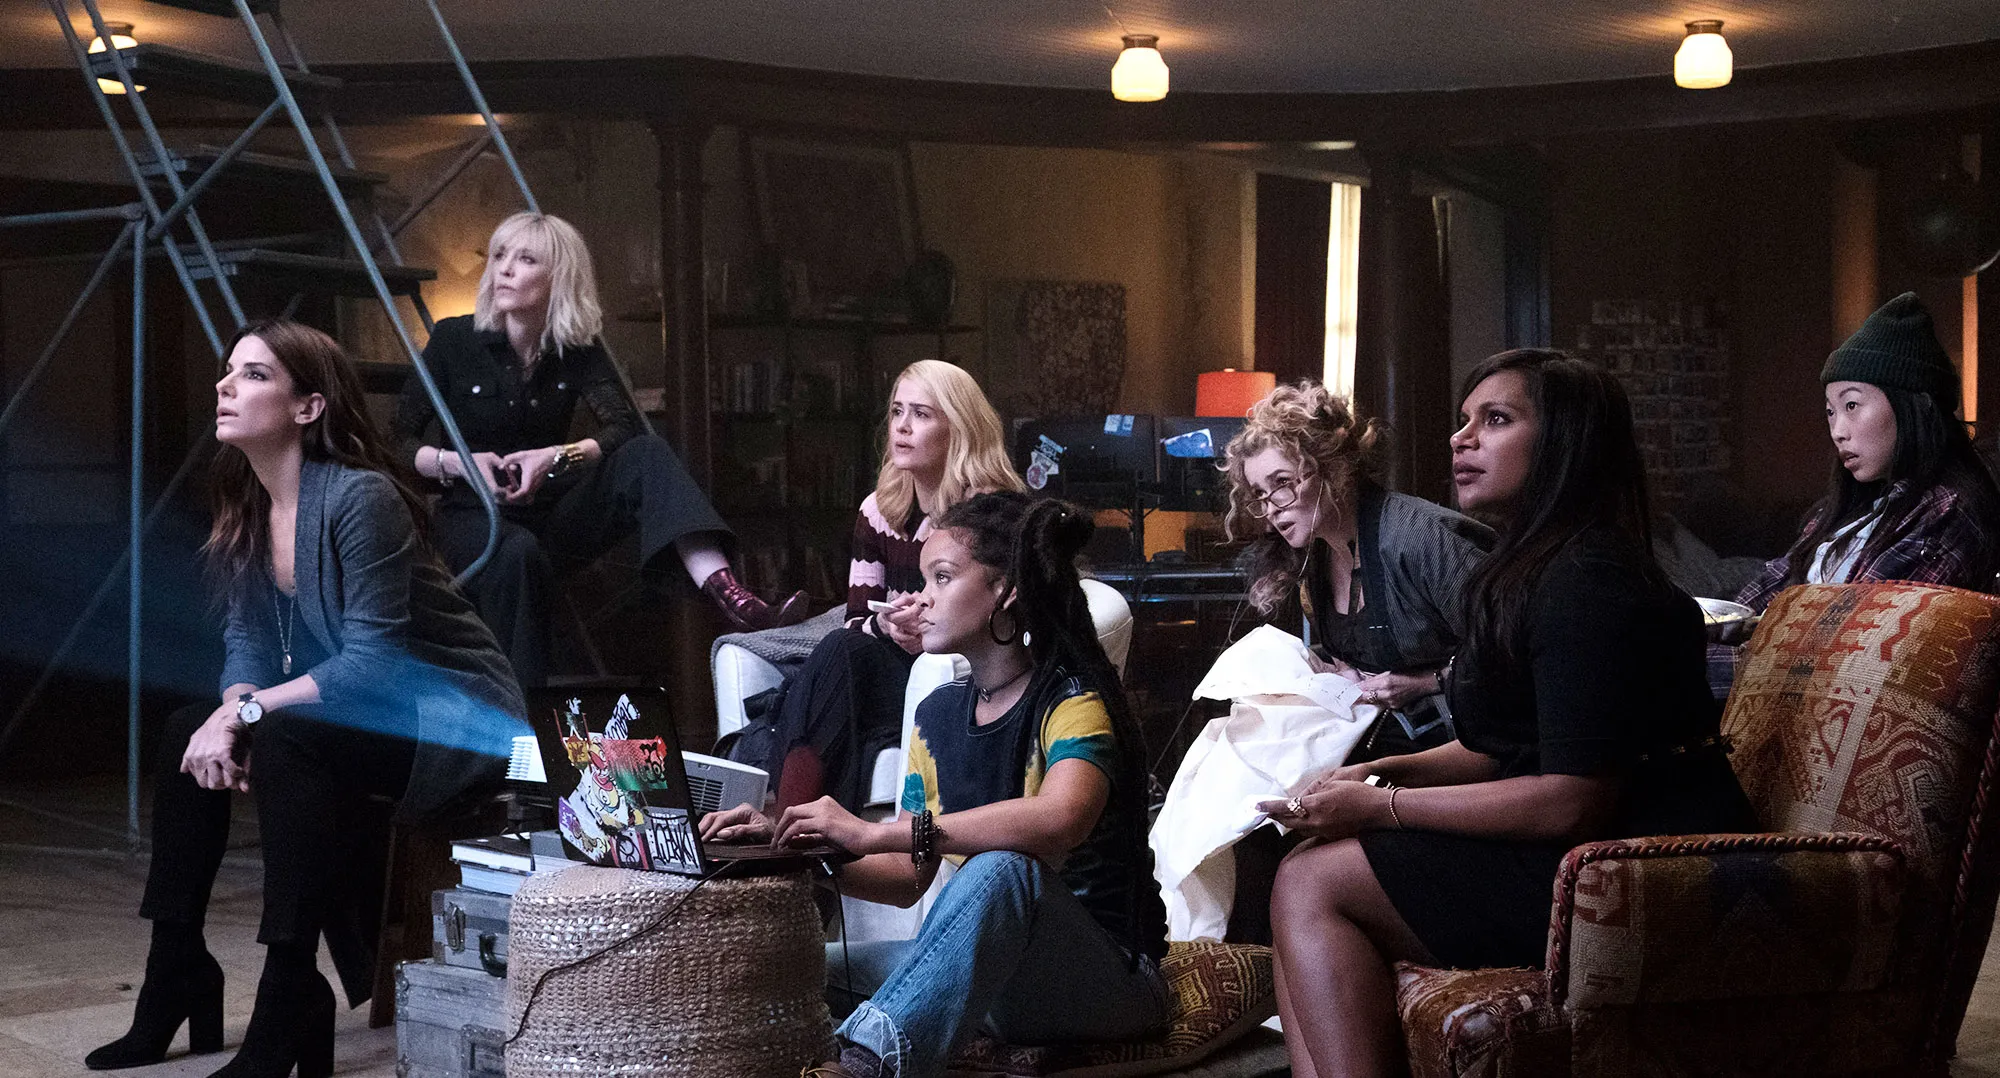 Cena do filme Oito Mulheres e um Segredo. As atrizes encontram-se sentadas em um galpão escuro, analisando a projeção do plano para roubar o colar.